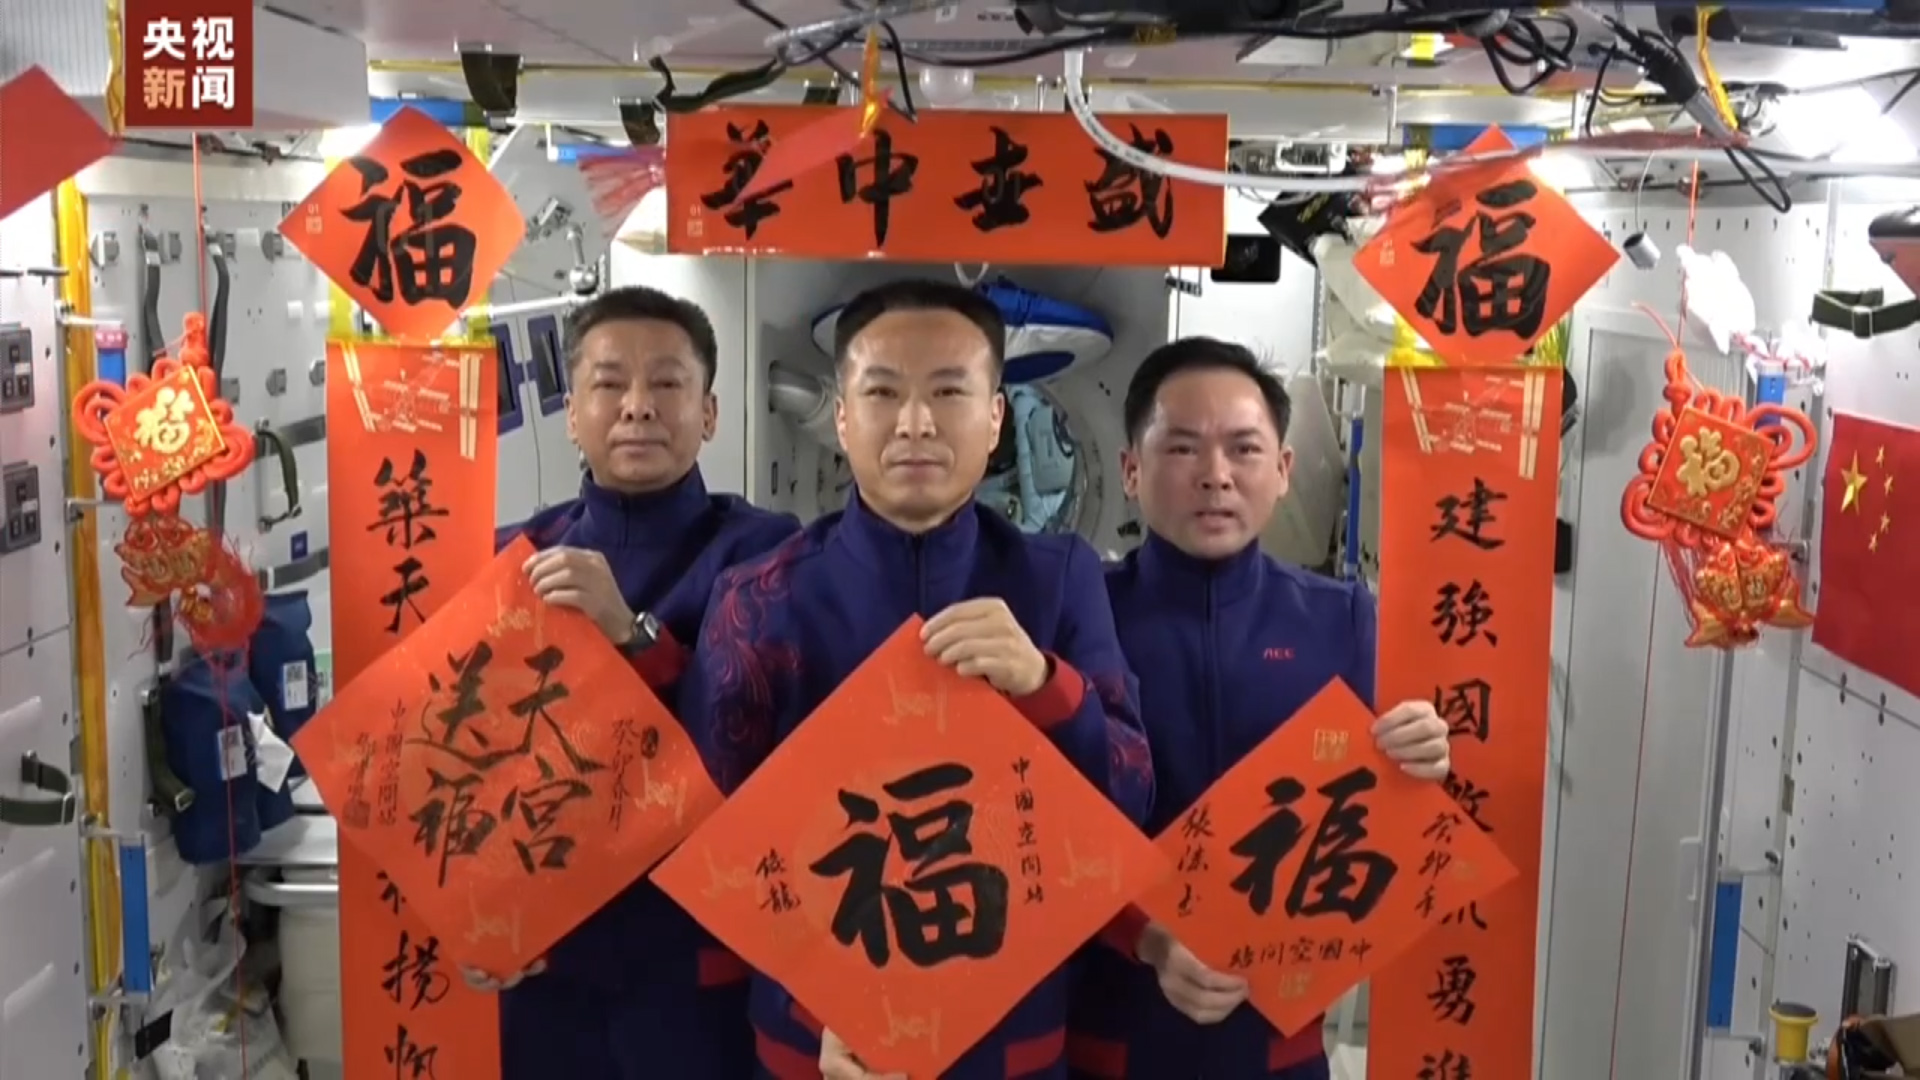 中国空间站三位航天员在除夕向全国人民送上祝福 央视新闻视频截图